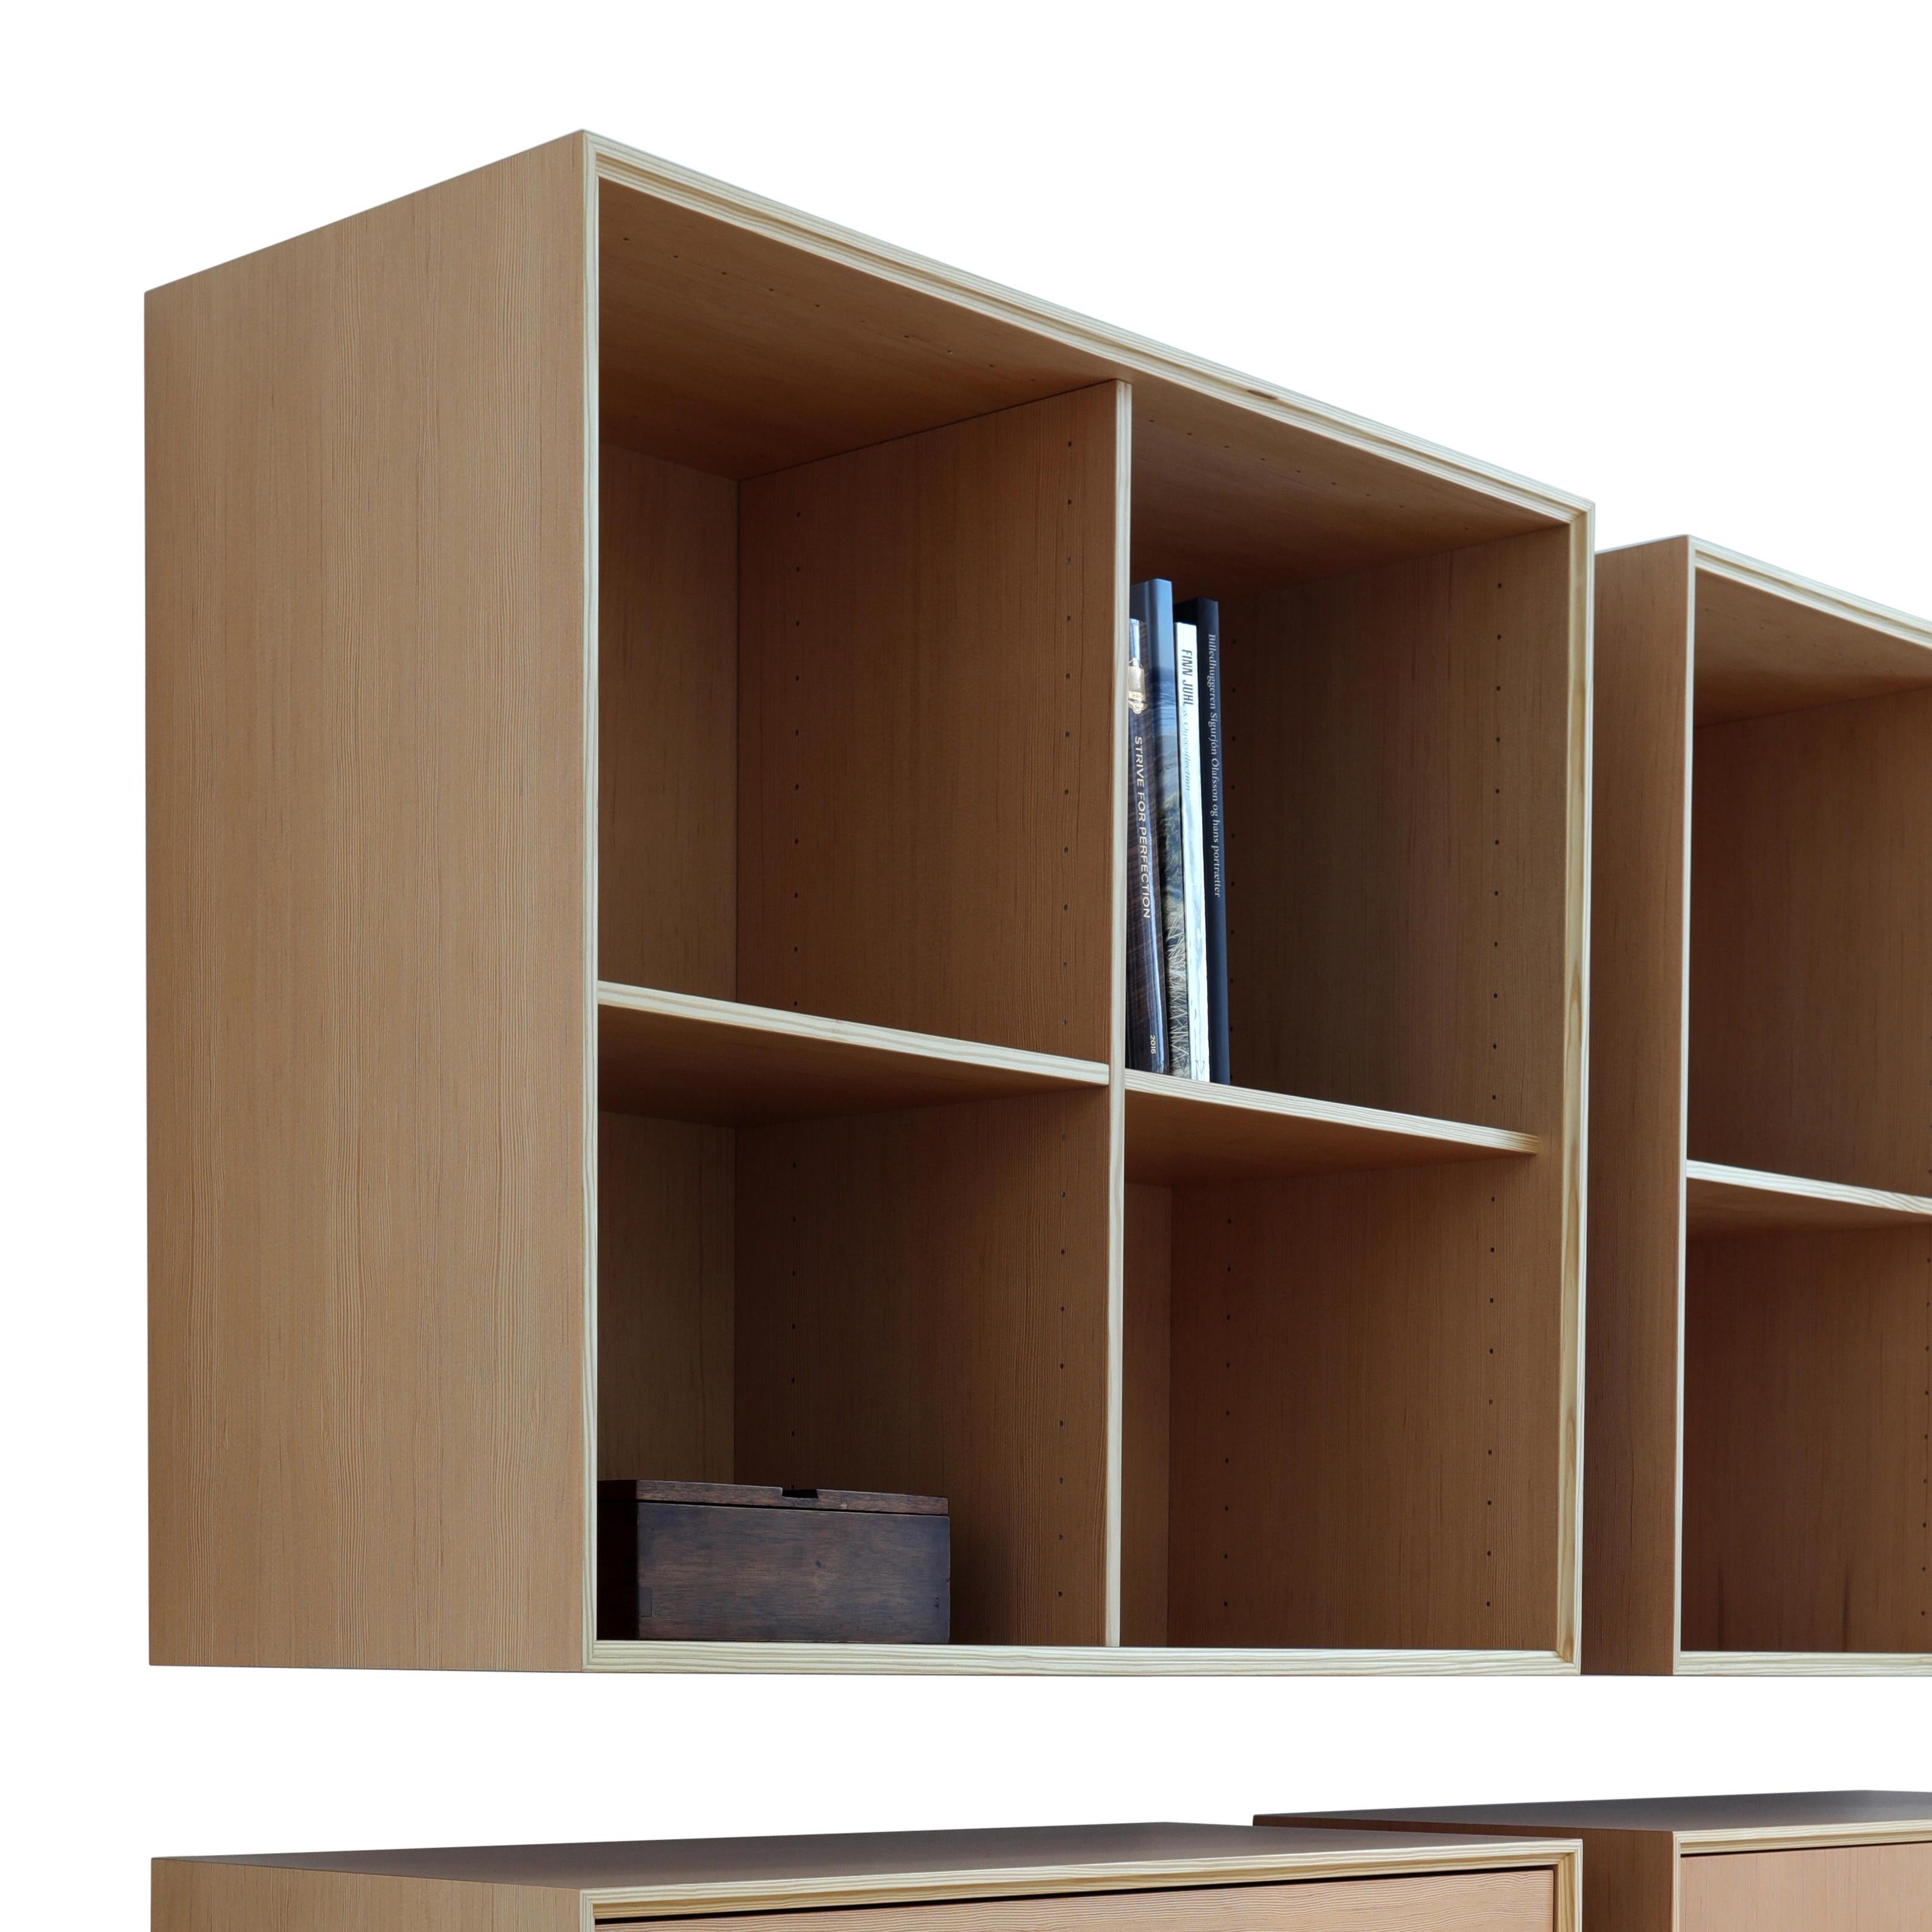 Das Bücherregal Classic wurde 2017 von Henrik Tengler entworfen und ist ein exklusives System mit unendlichen Möglichkeiten. Das System bietet elegante und flexible Aufbewahrungslösungen für den privaten Haushalt oder das Büro. Wählen Sie Ihr